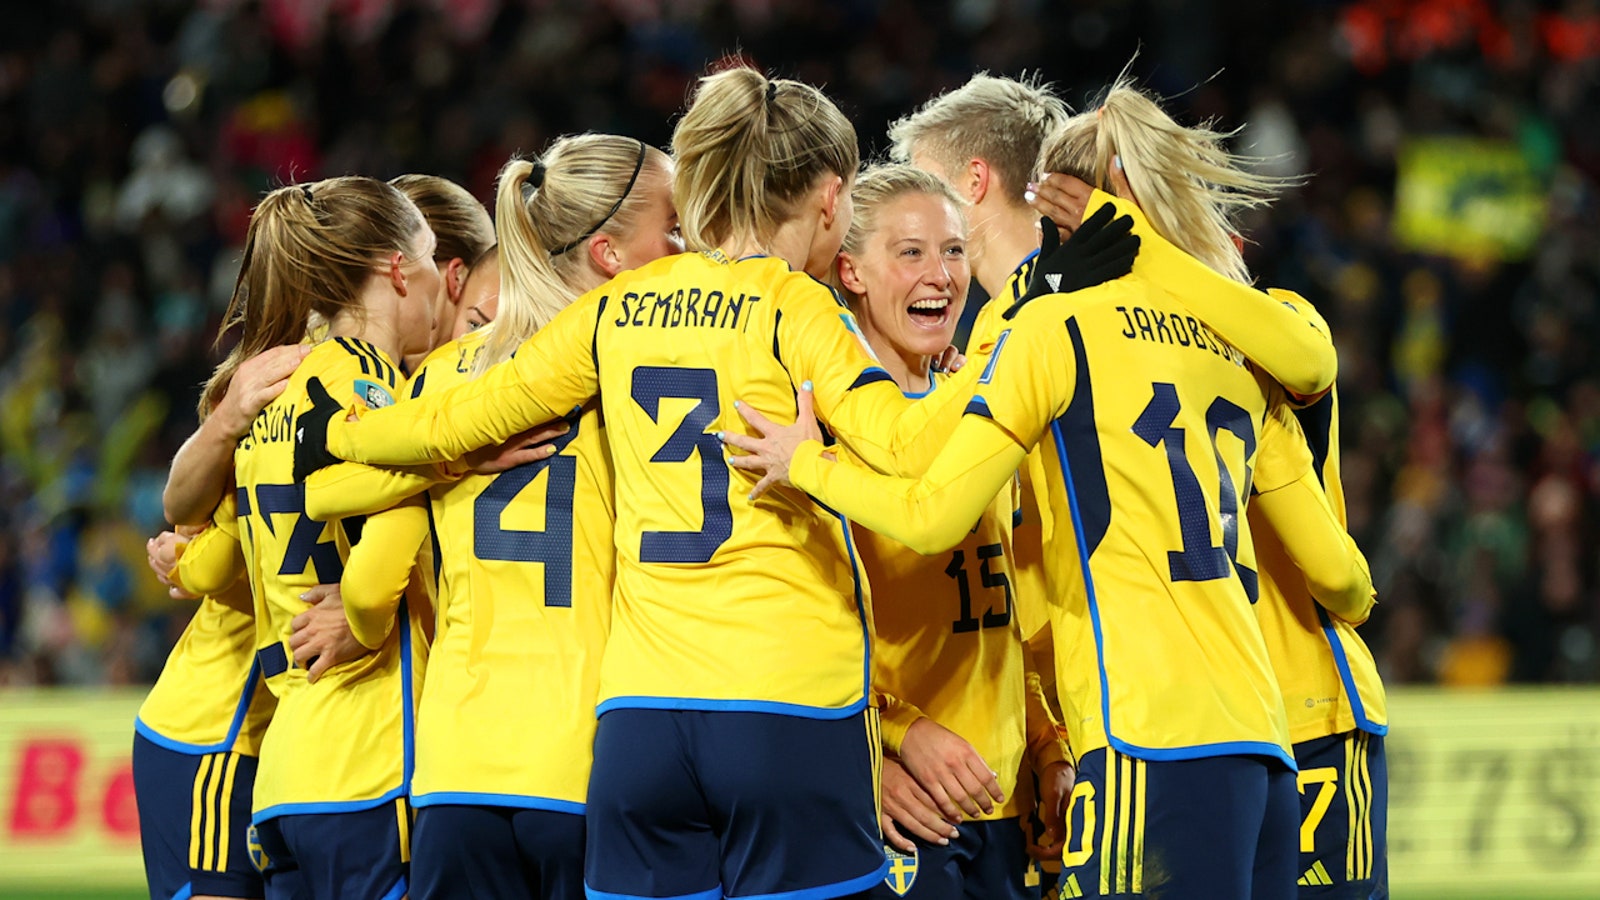 Sweden's Rebecka Blomqvist scores goal vs. Argentina in 66'